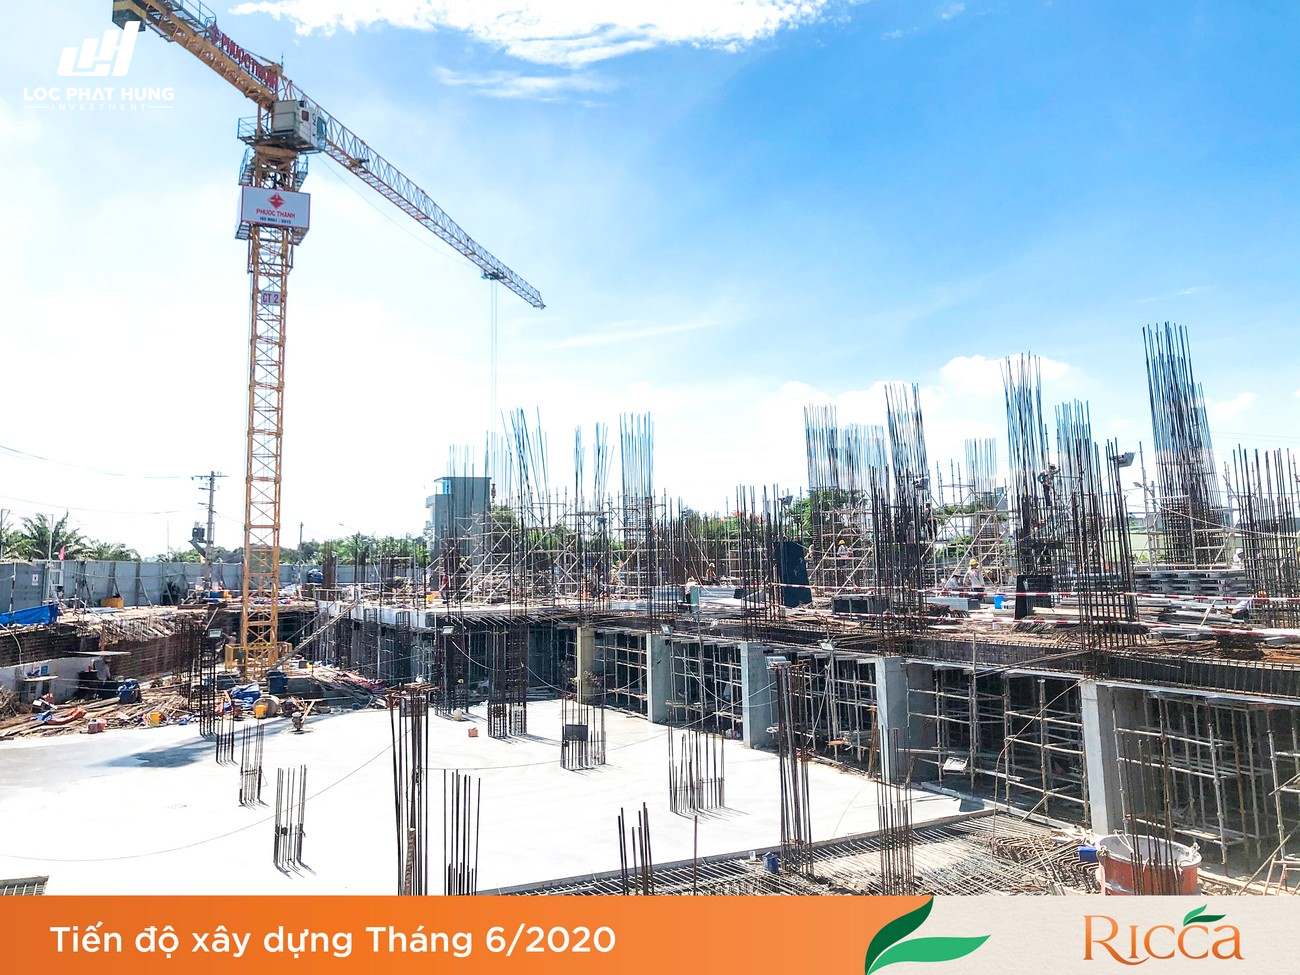 Tiến độ xây dựng dự án căn hộ Ricca Quận 9 – 06/2020